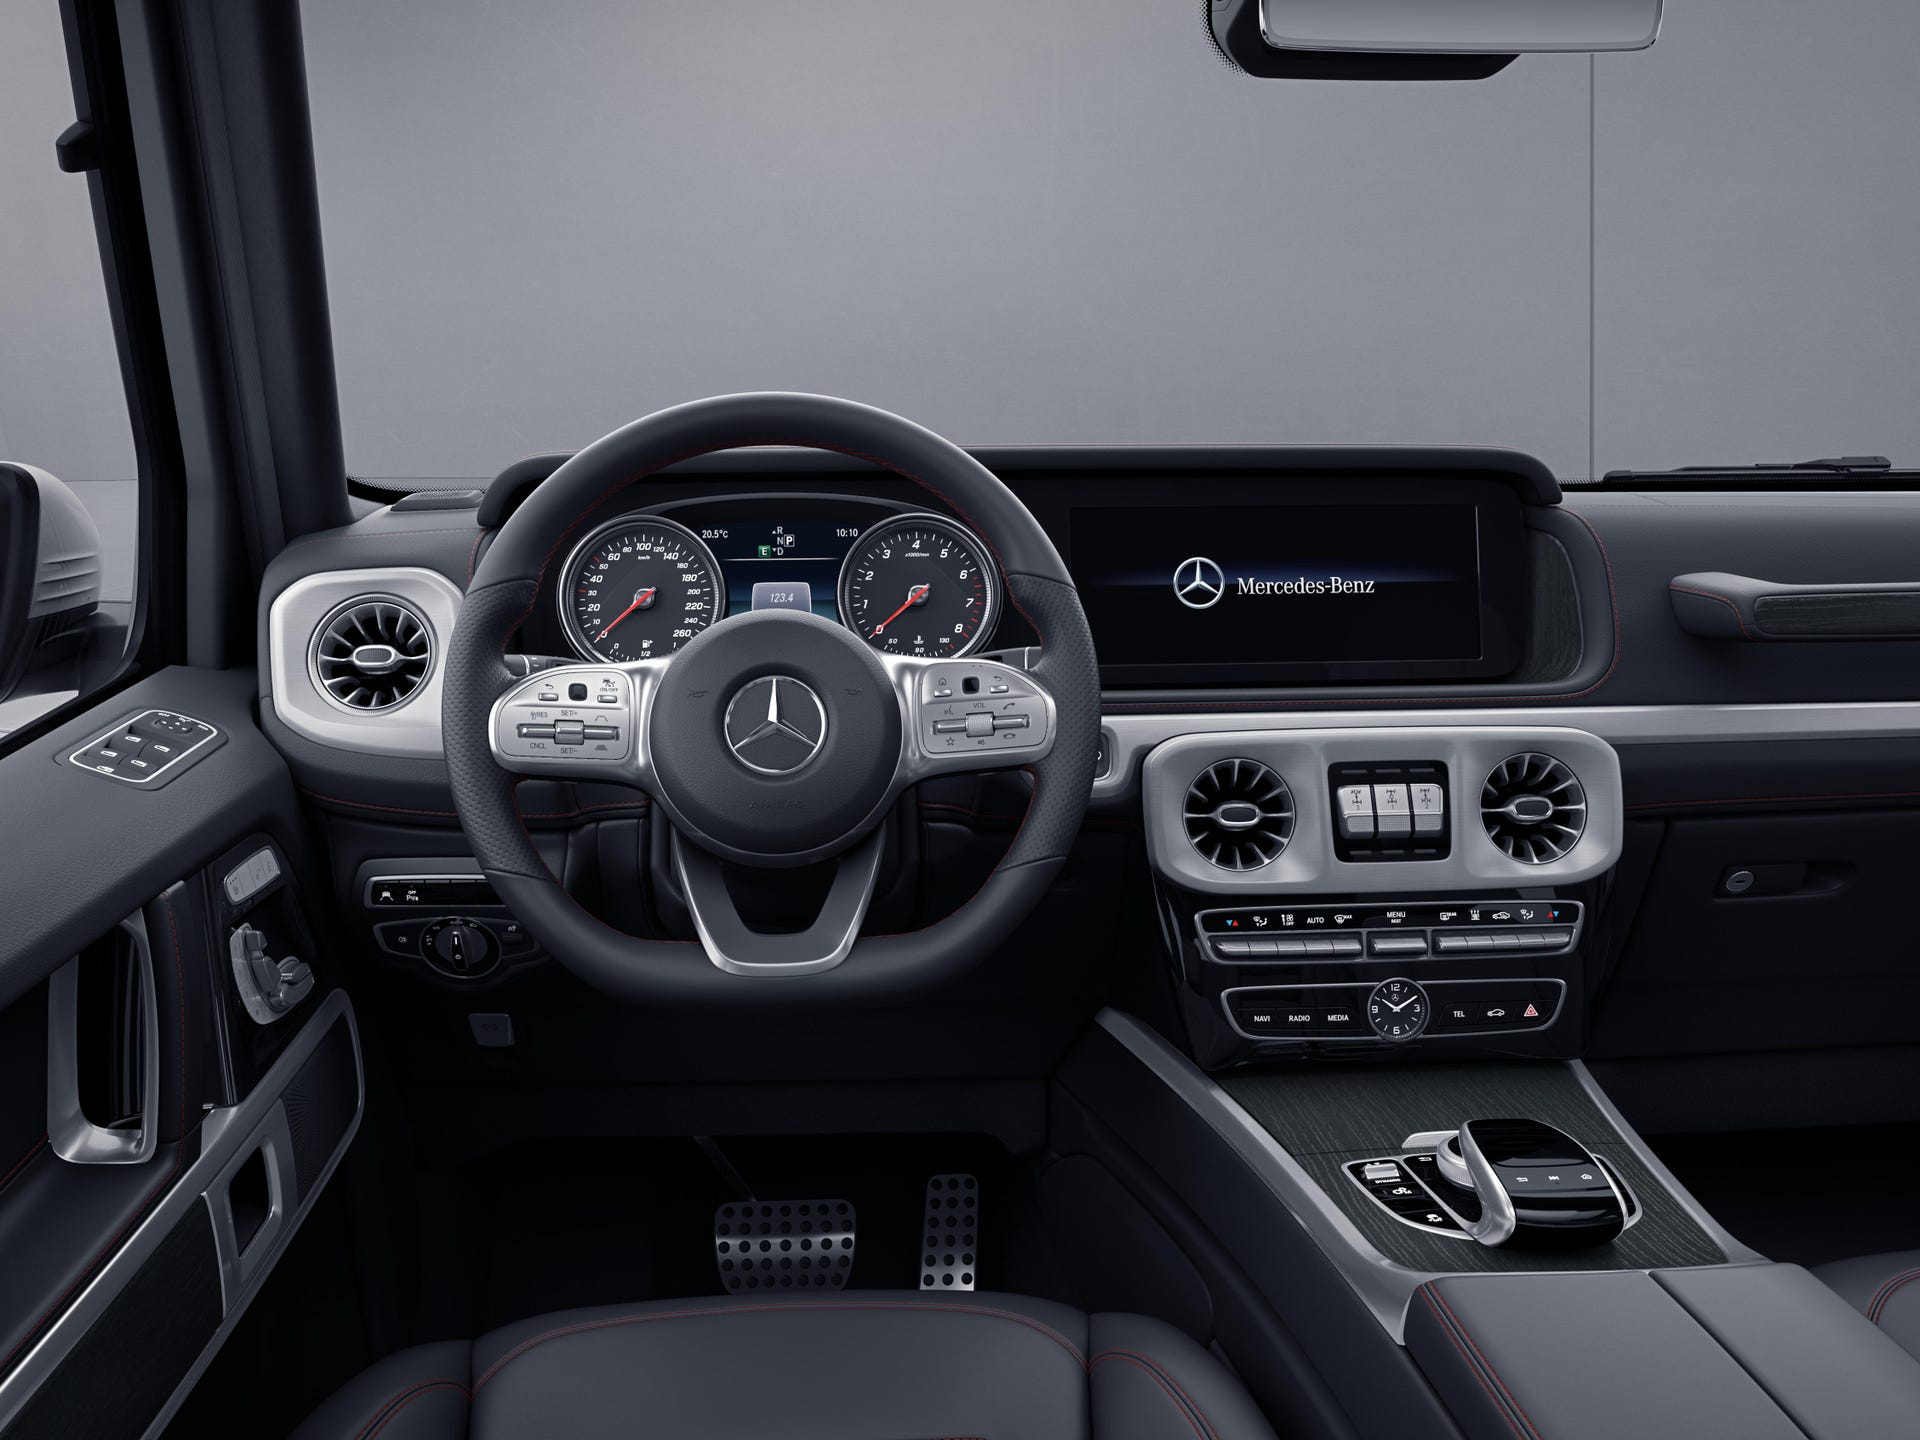 2019-mercedes-benz-g-class-interior-6.jpg